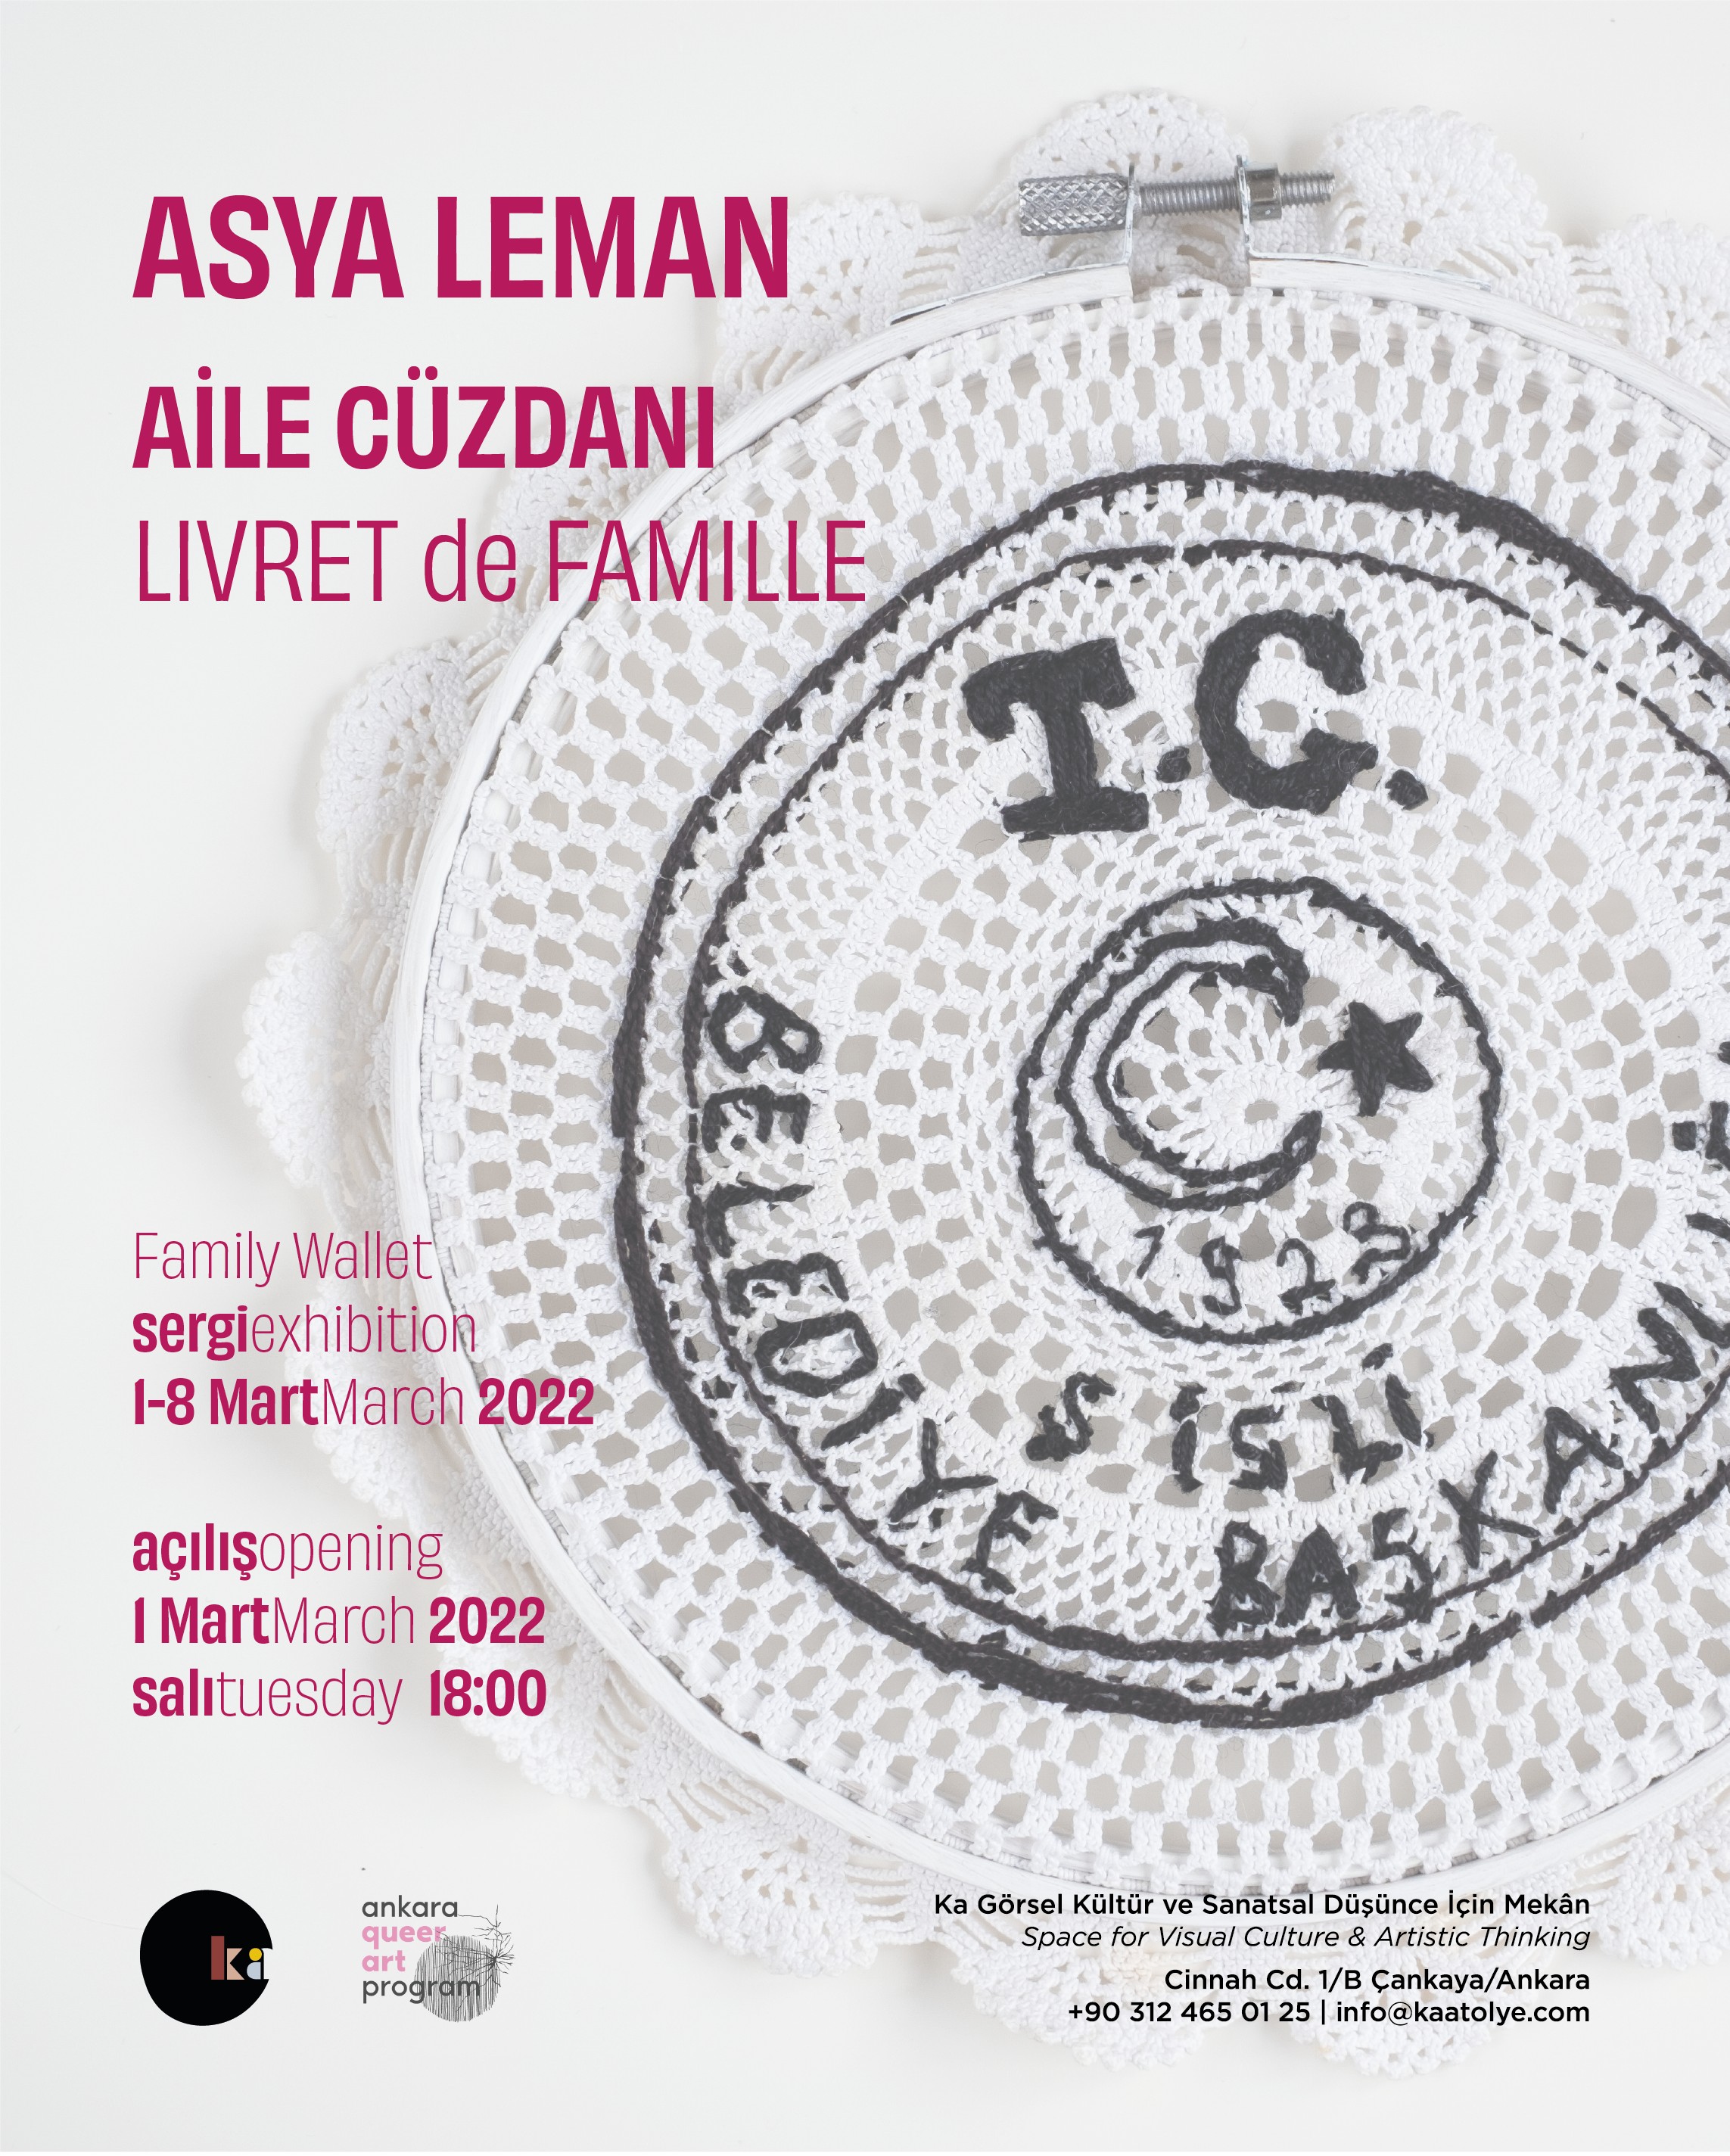 Asya leman: Aile Cüzdanı - Livre de Famille Haberi